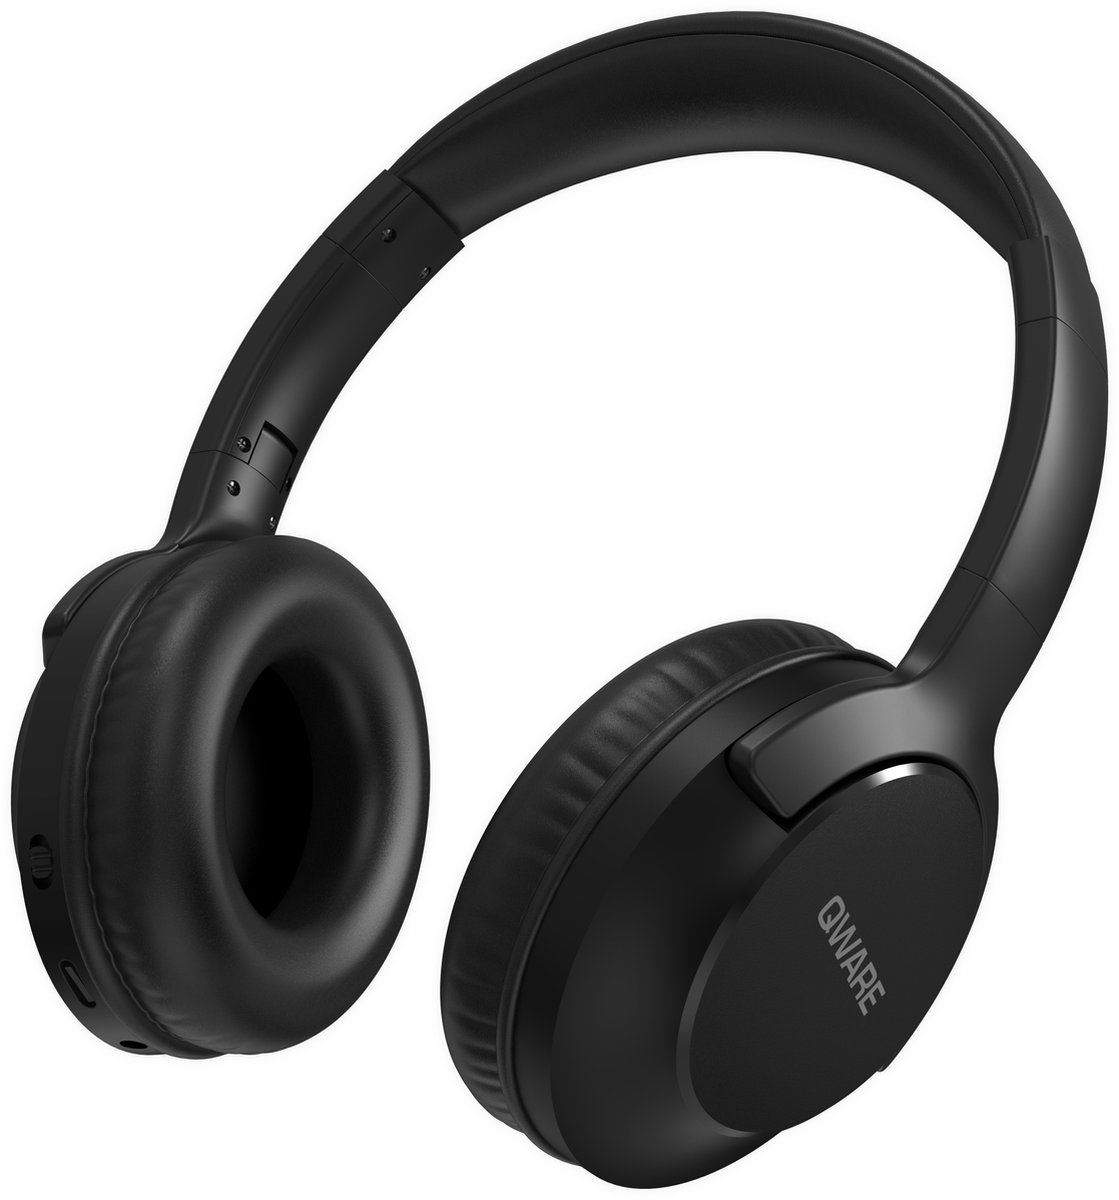 Qware - Draadloze Koptelefoon - Draadloos- Bluetooth 5.1 - Headset - Headphone - Volumeknoppen - USB-C - 20h luisteren op 50% - Vouwbaar Design - Zwart